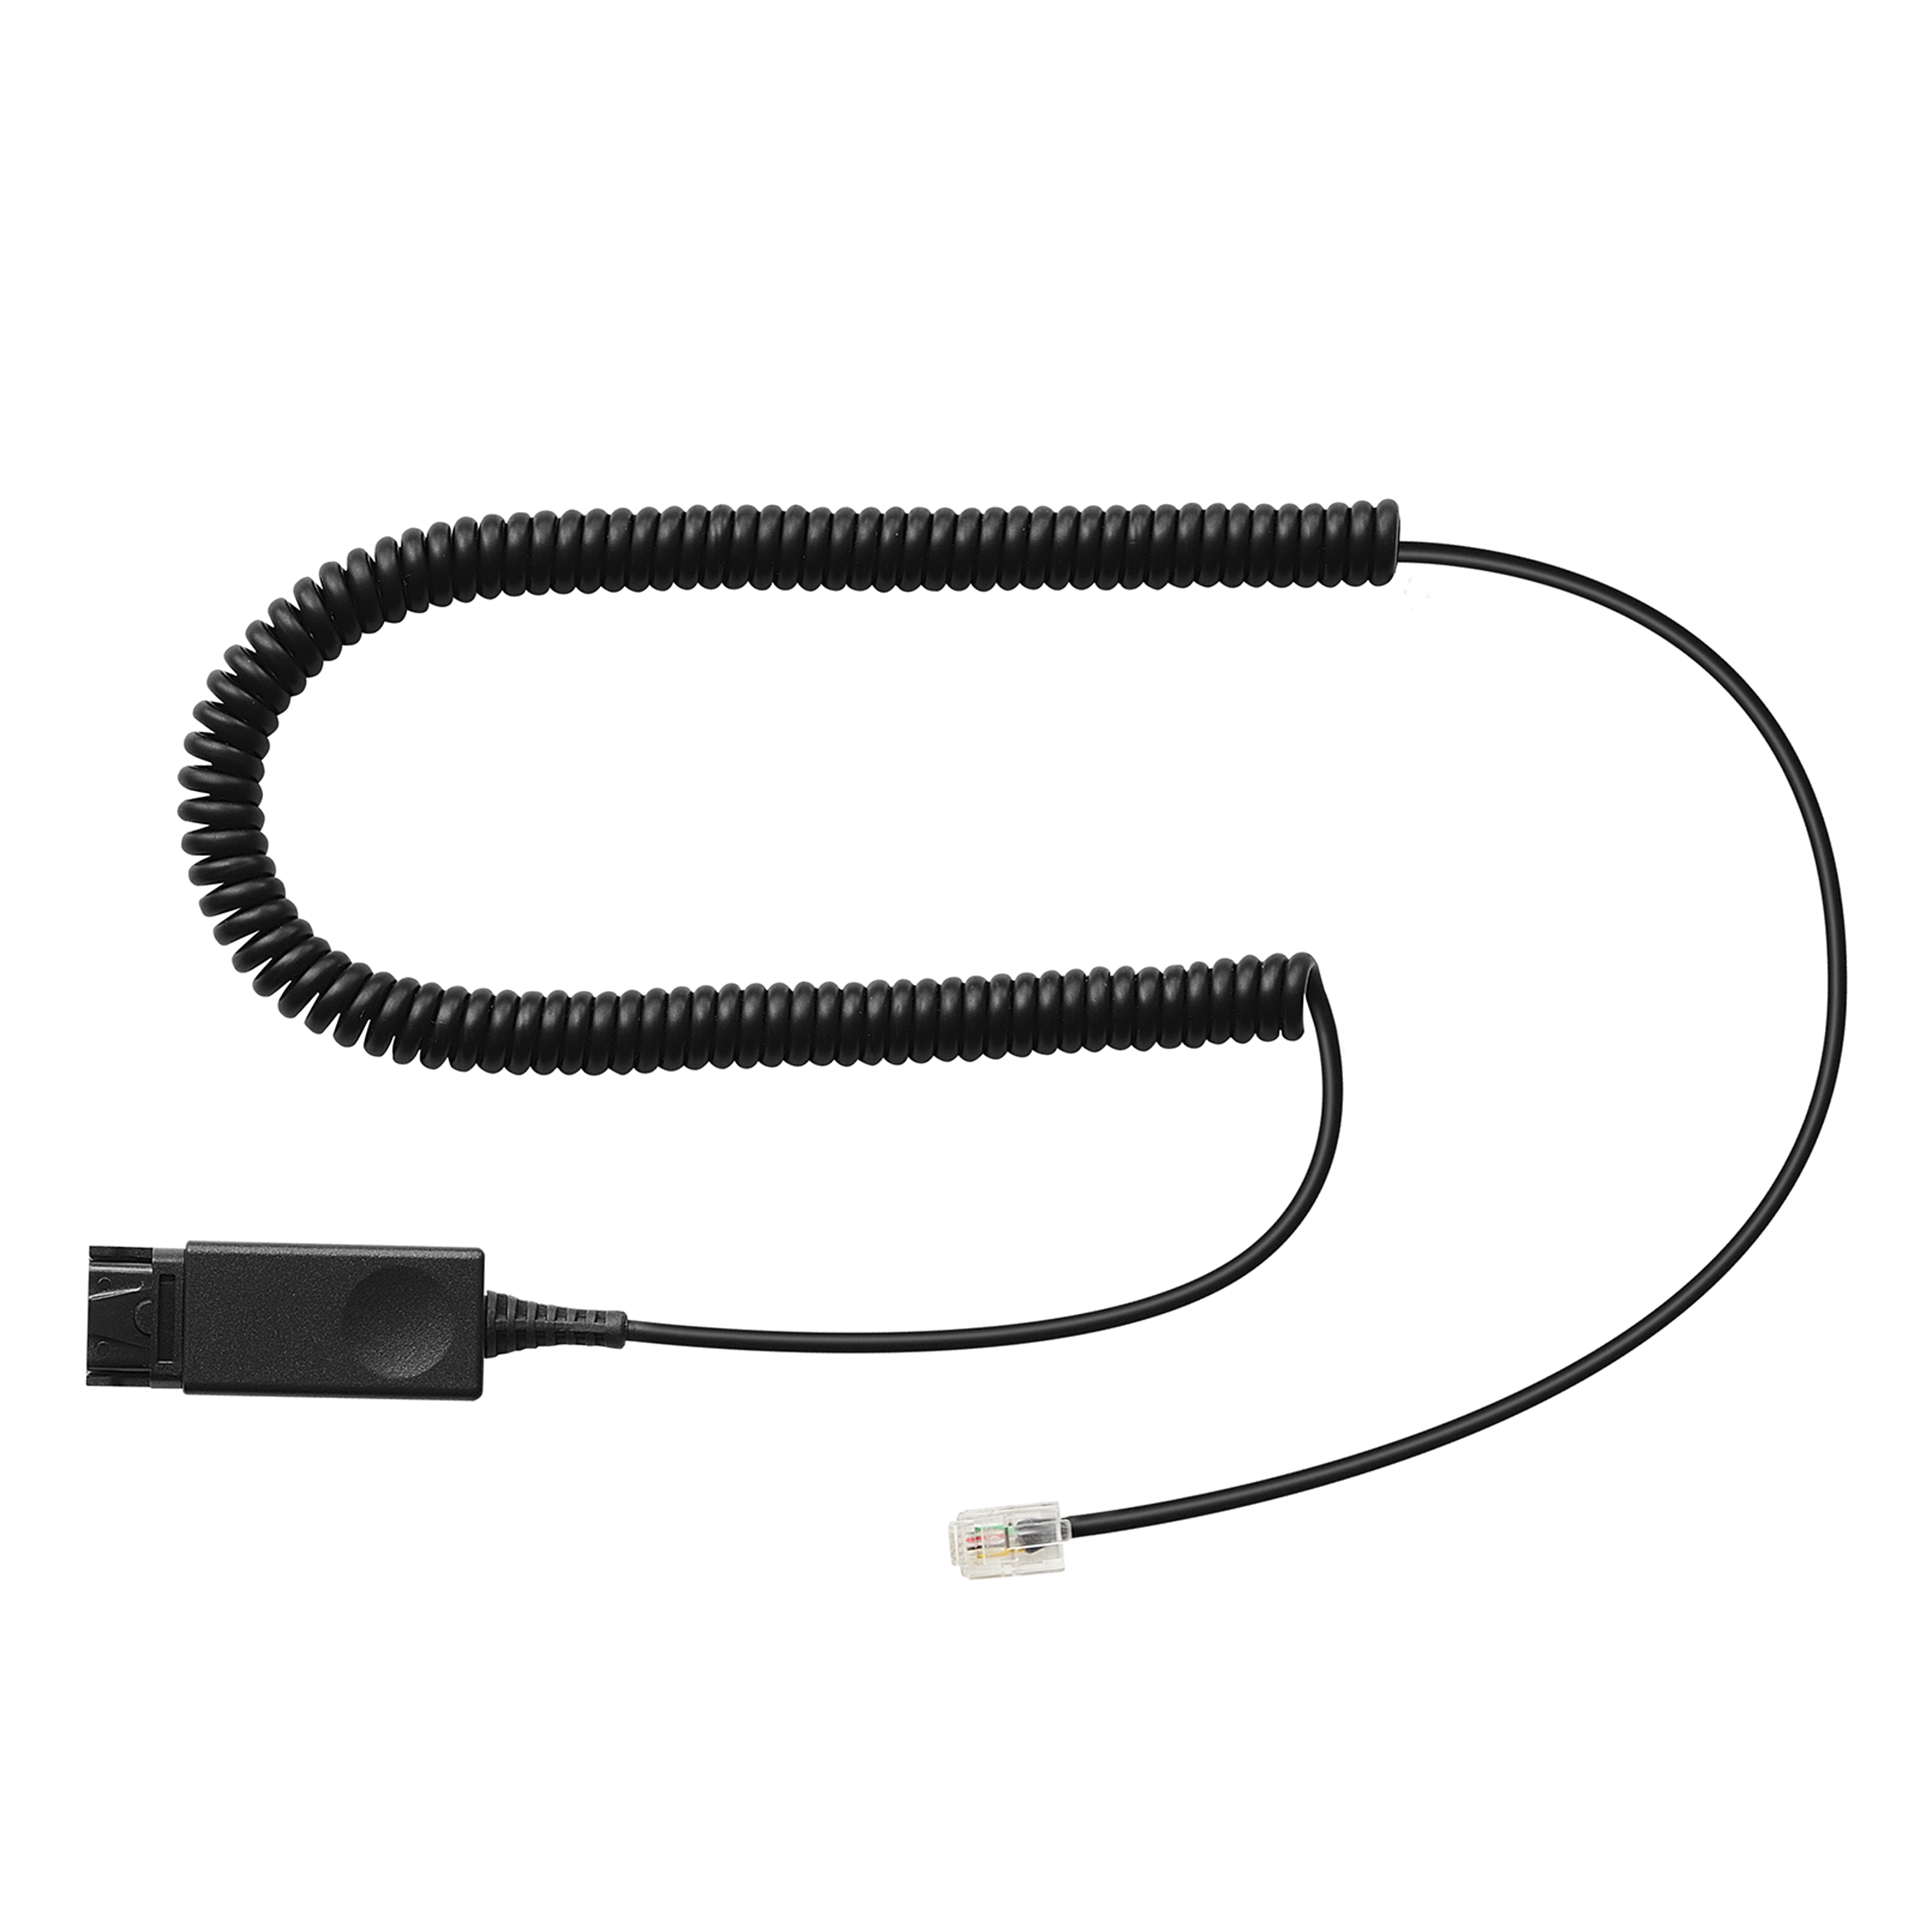 Addasound Anschlusskabel PLX-QD Kabel für AVAYA IP Phone HIS (Typen 1600, 9600)